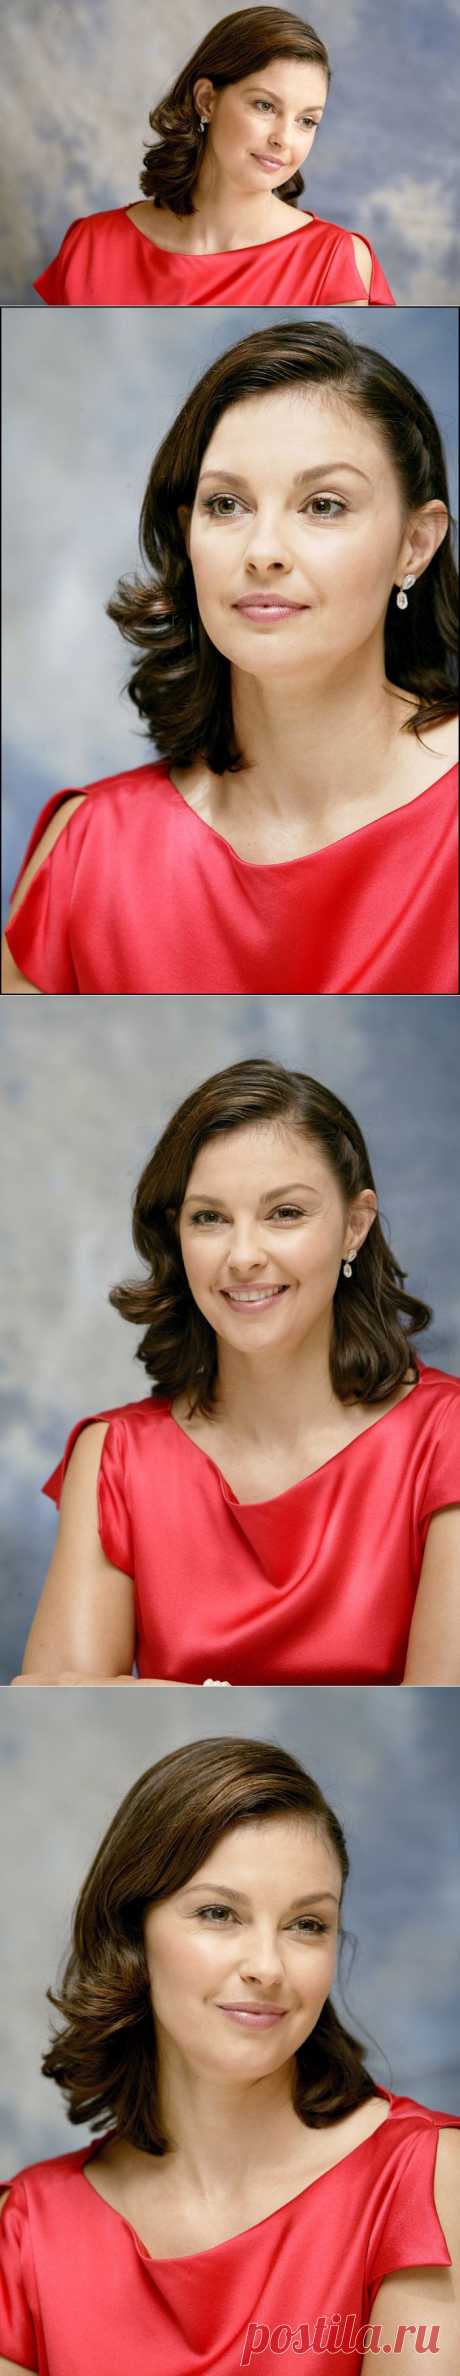 Эшли Джадд(Ashley Judd) в портретной фотосессии Армандо Галло(Armando Gallo) (2004).